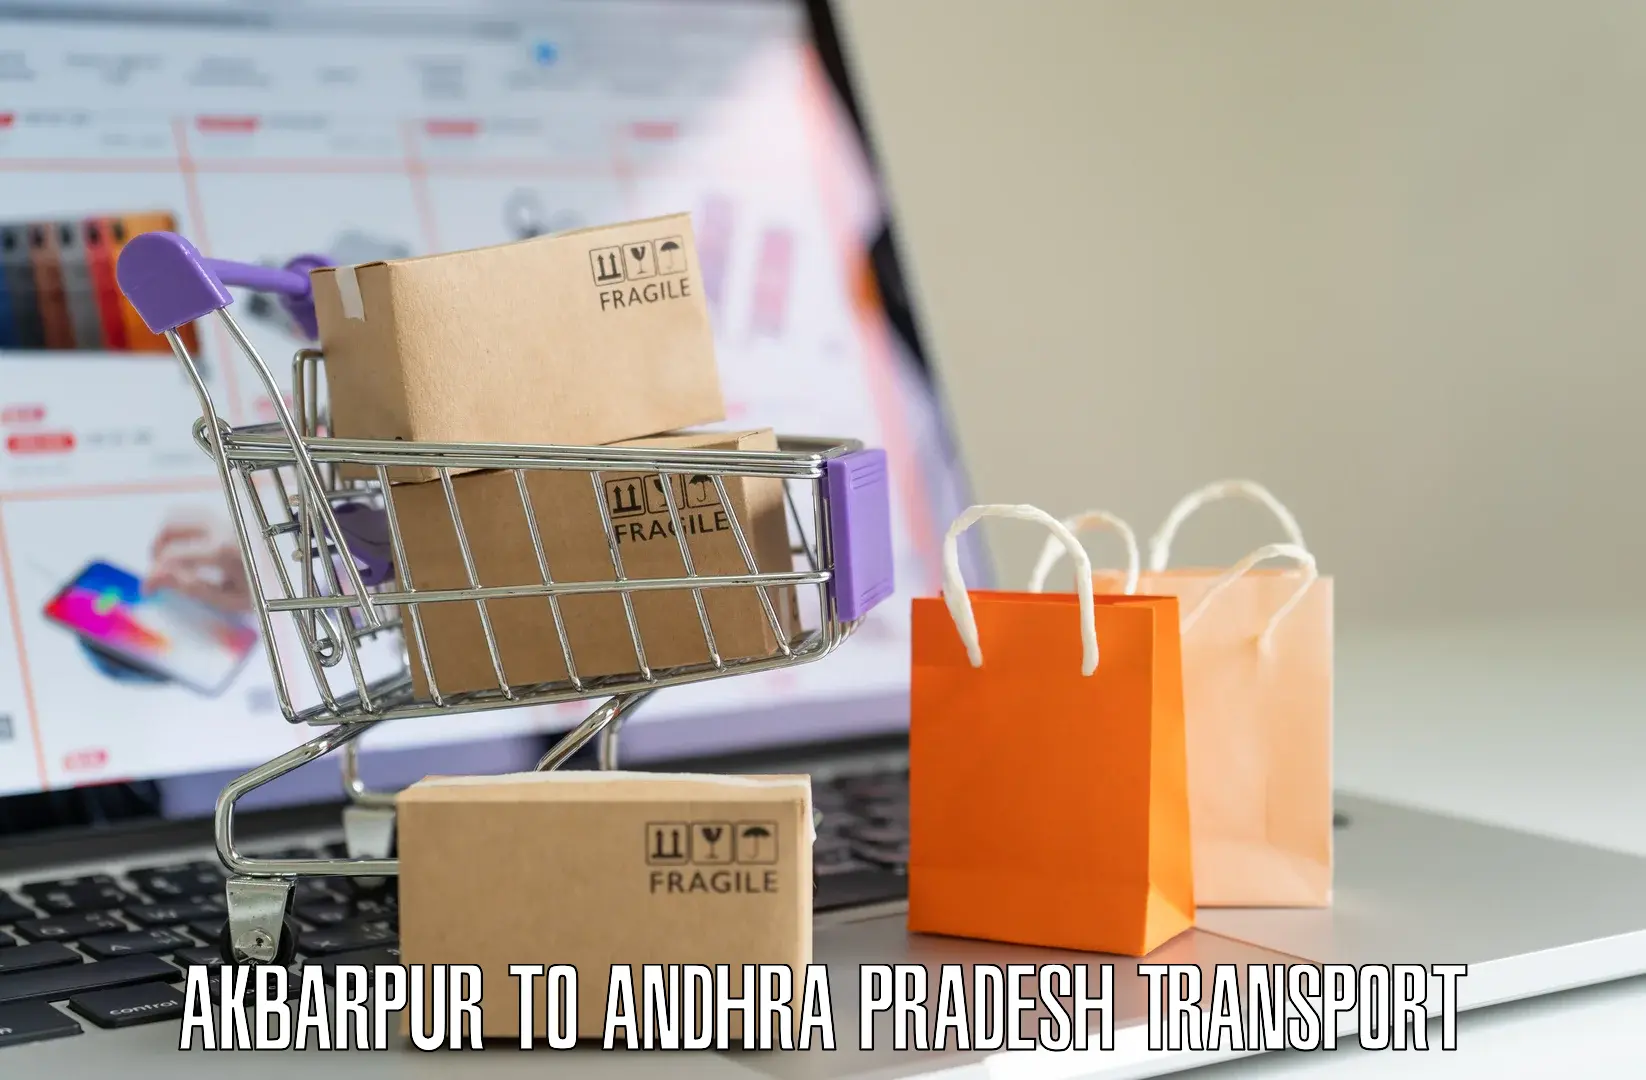 Nearby transport service Akbarpur to Andhra Pradesh